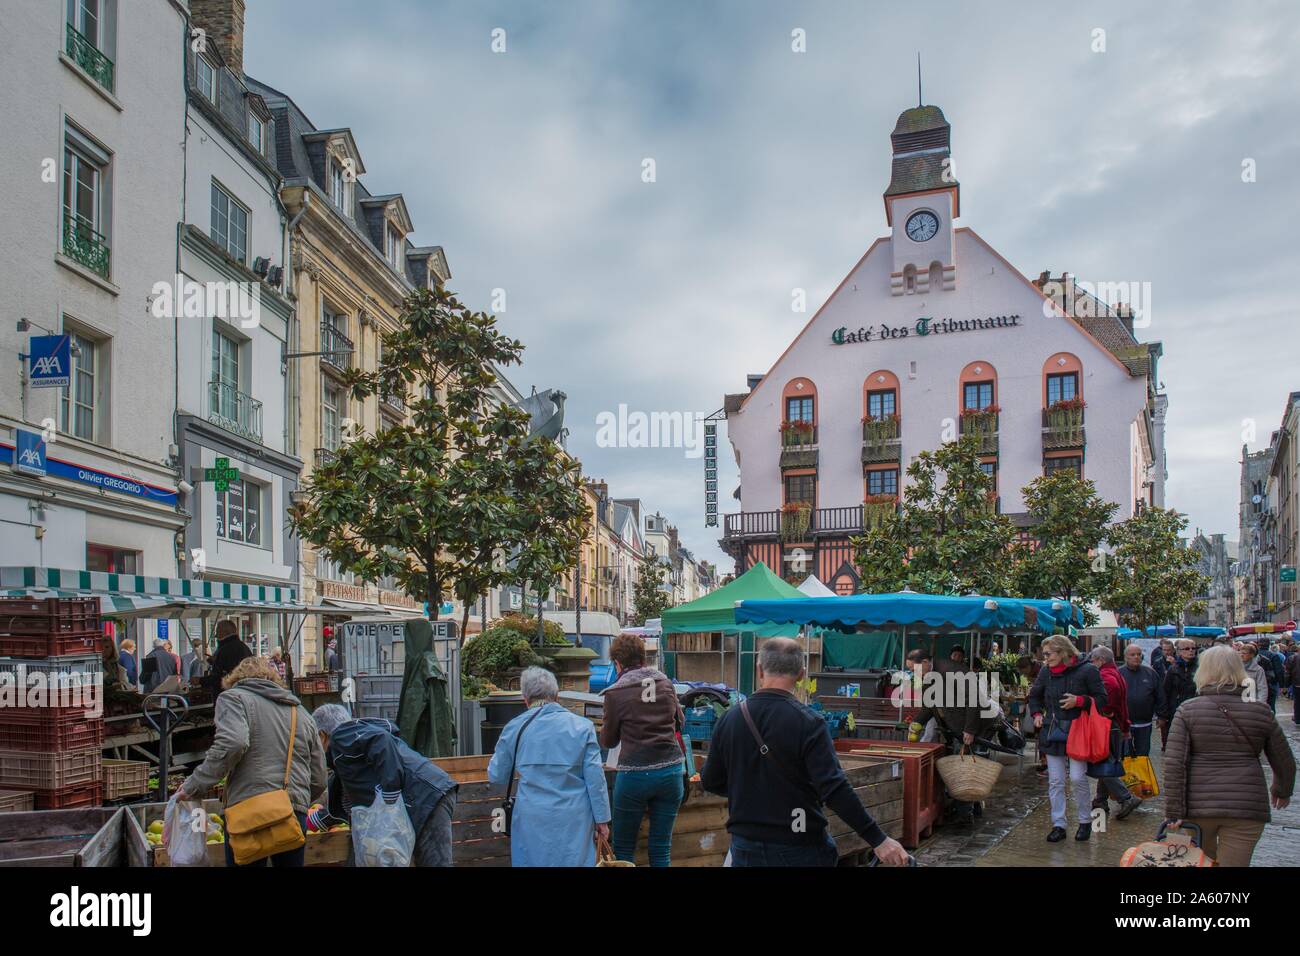 France, Pays de Caux, Dieppe, Place du Puits Salé, market, Café des Tribunaux Stock Photo